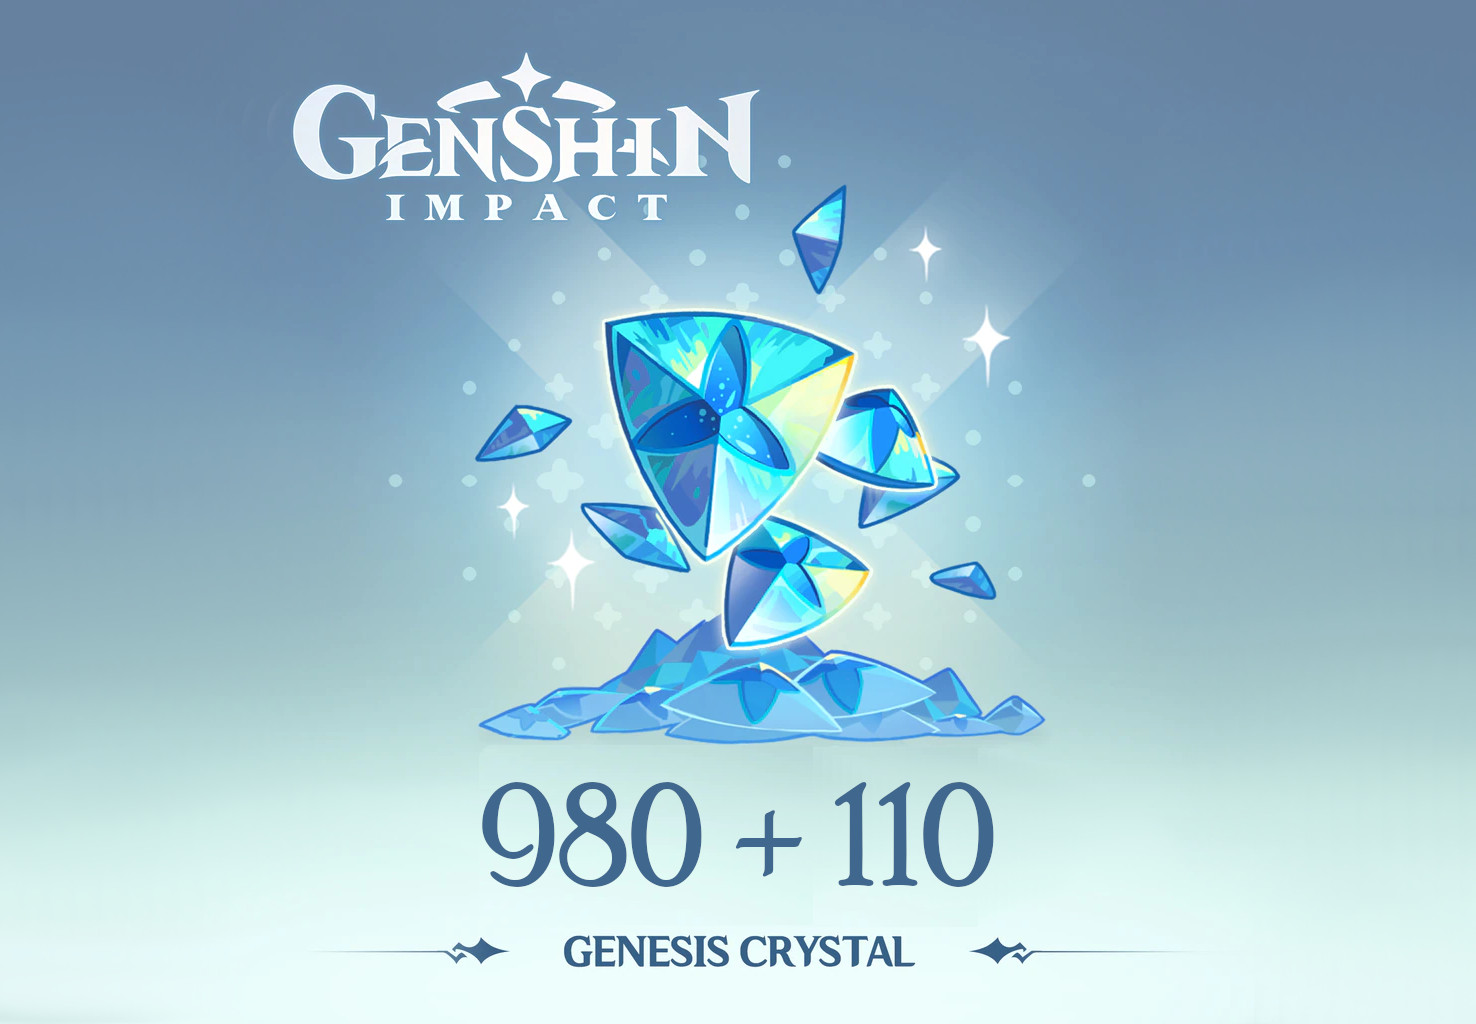 Genshin Impact - 980 + 110 Genesis Crystals Reidos Voucher [USD 17.23]